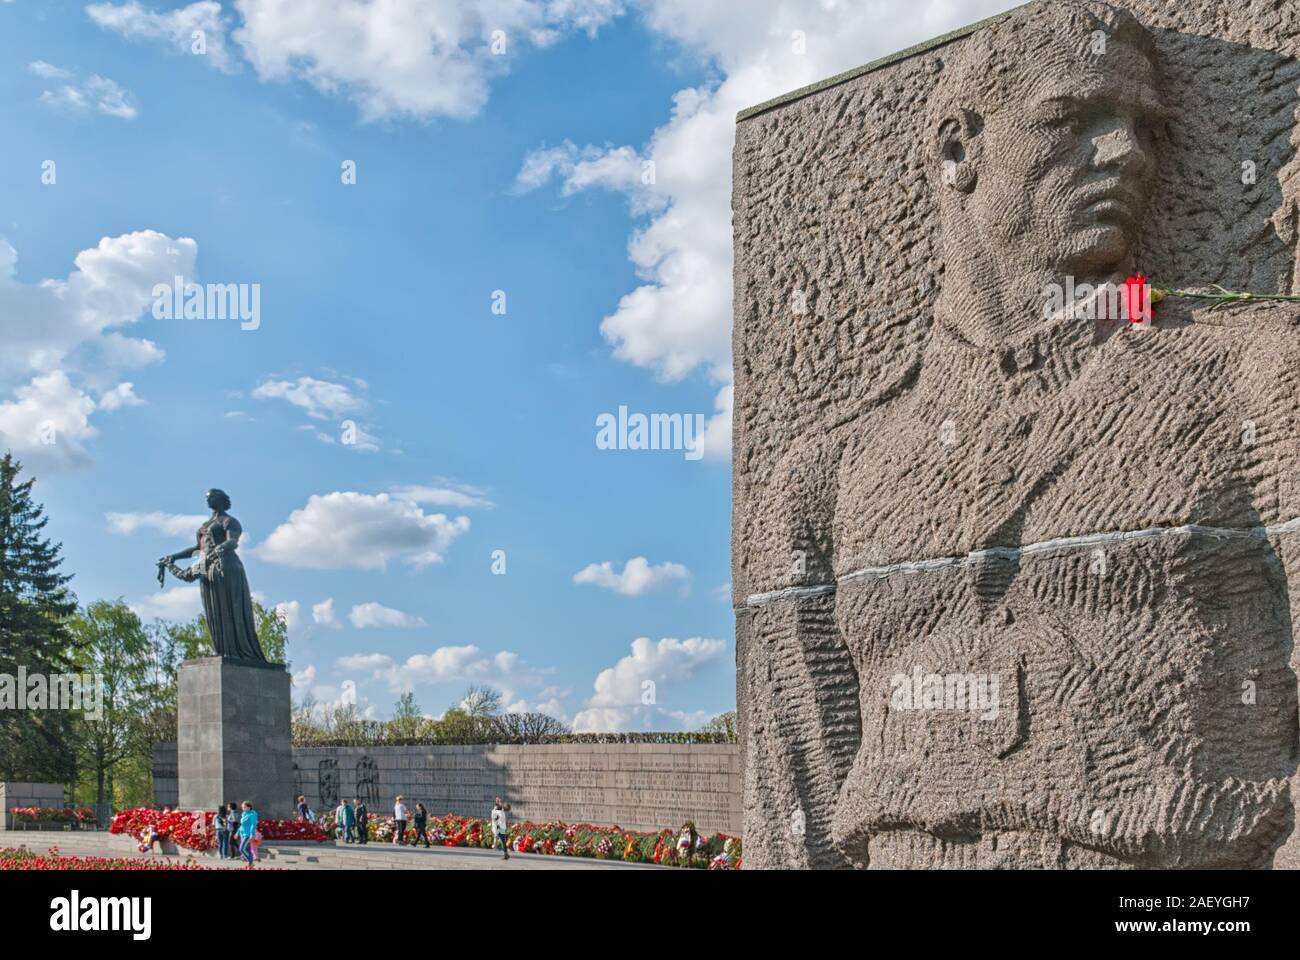 Saint-pétersbourg, Russie - 12 mai 2019 : La sculpture d'un soldat sur le mur stela et Statue de la Mère-Patrie sur Piskaryovskoye Memorial Cemetery Banque D'Images